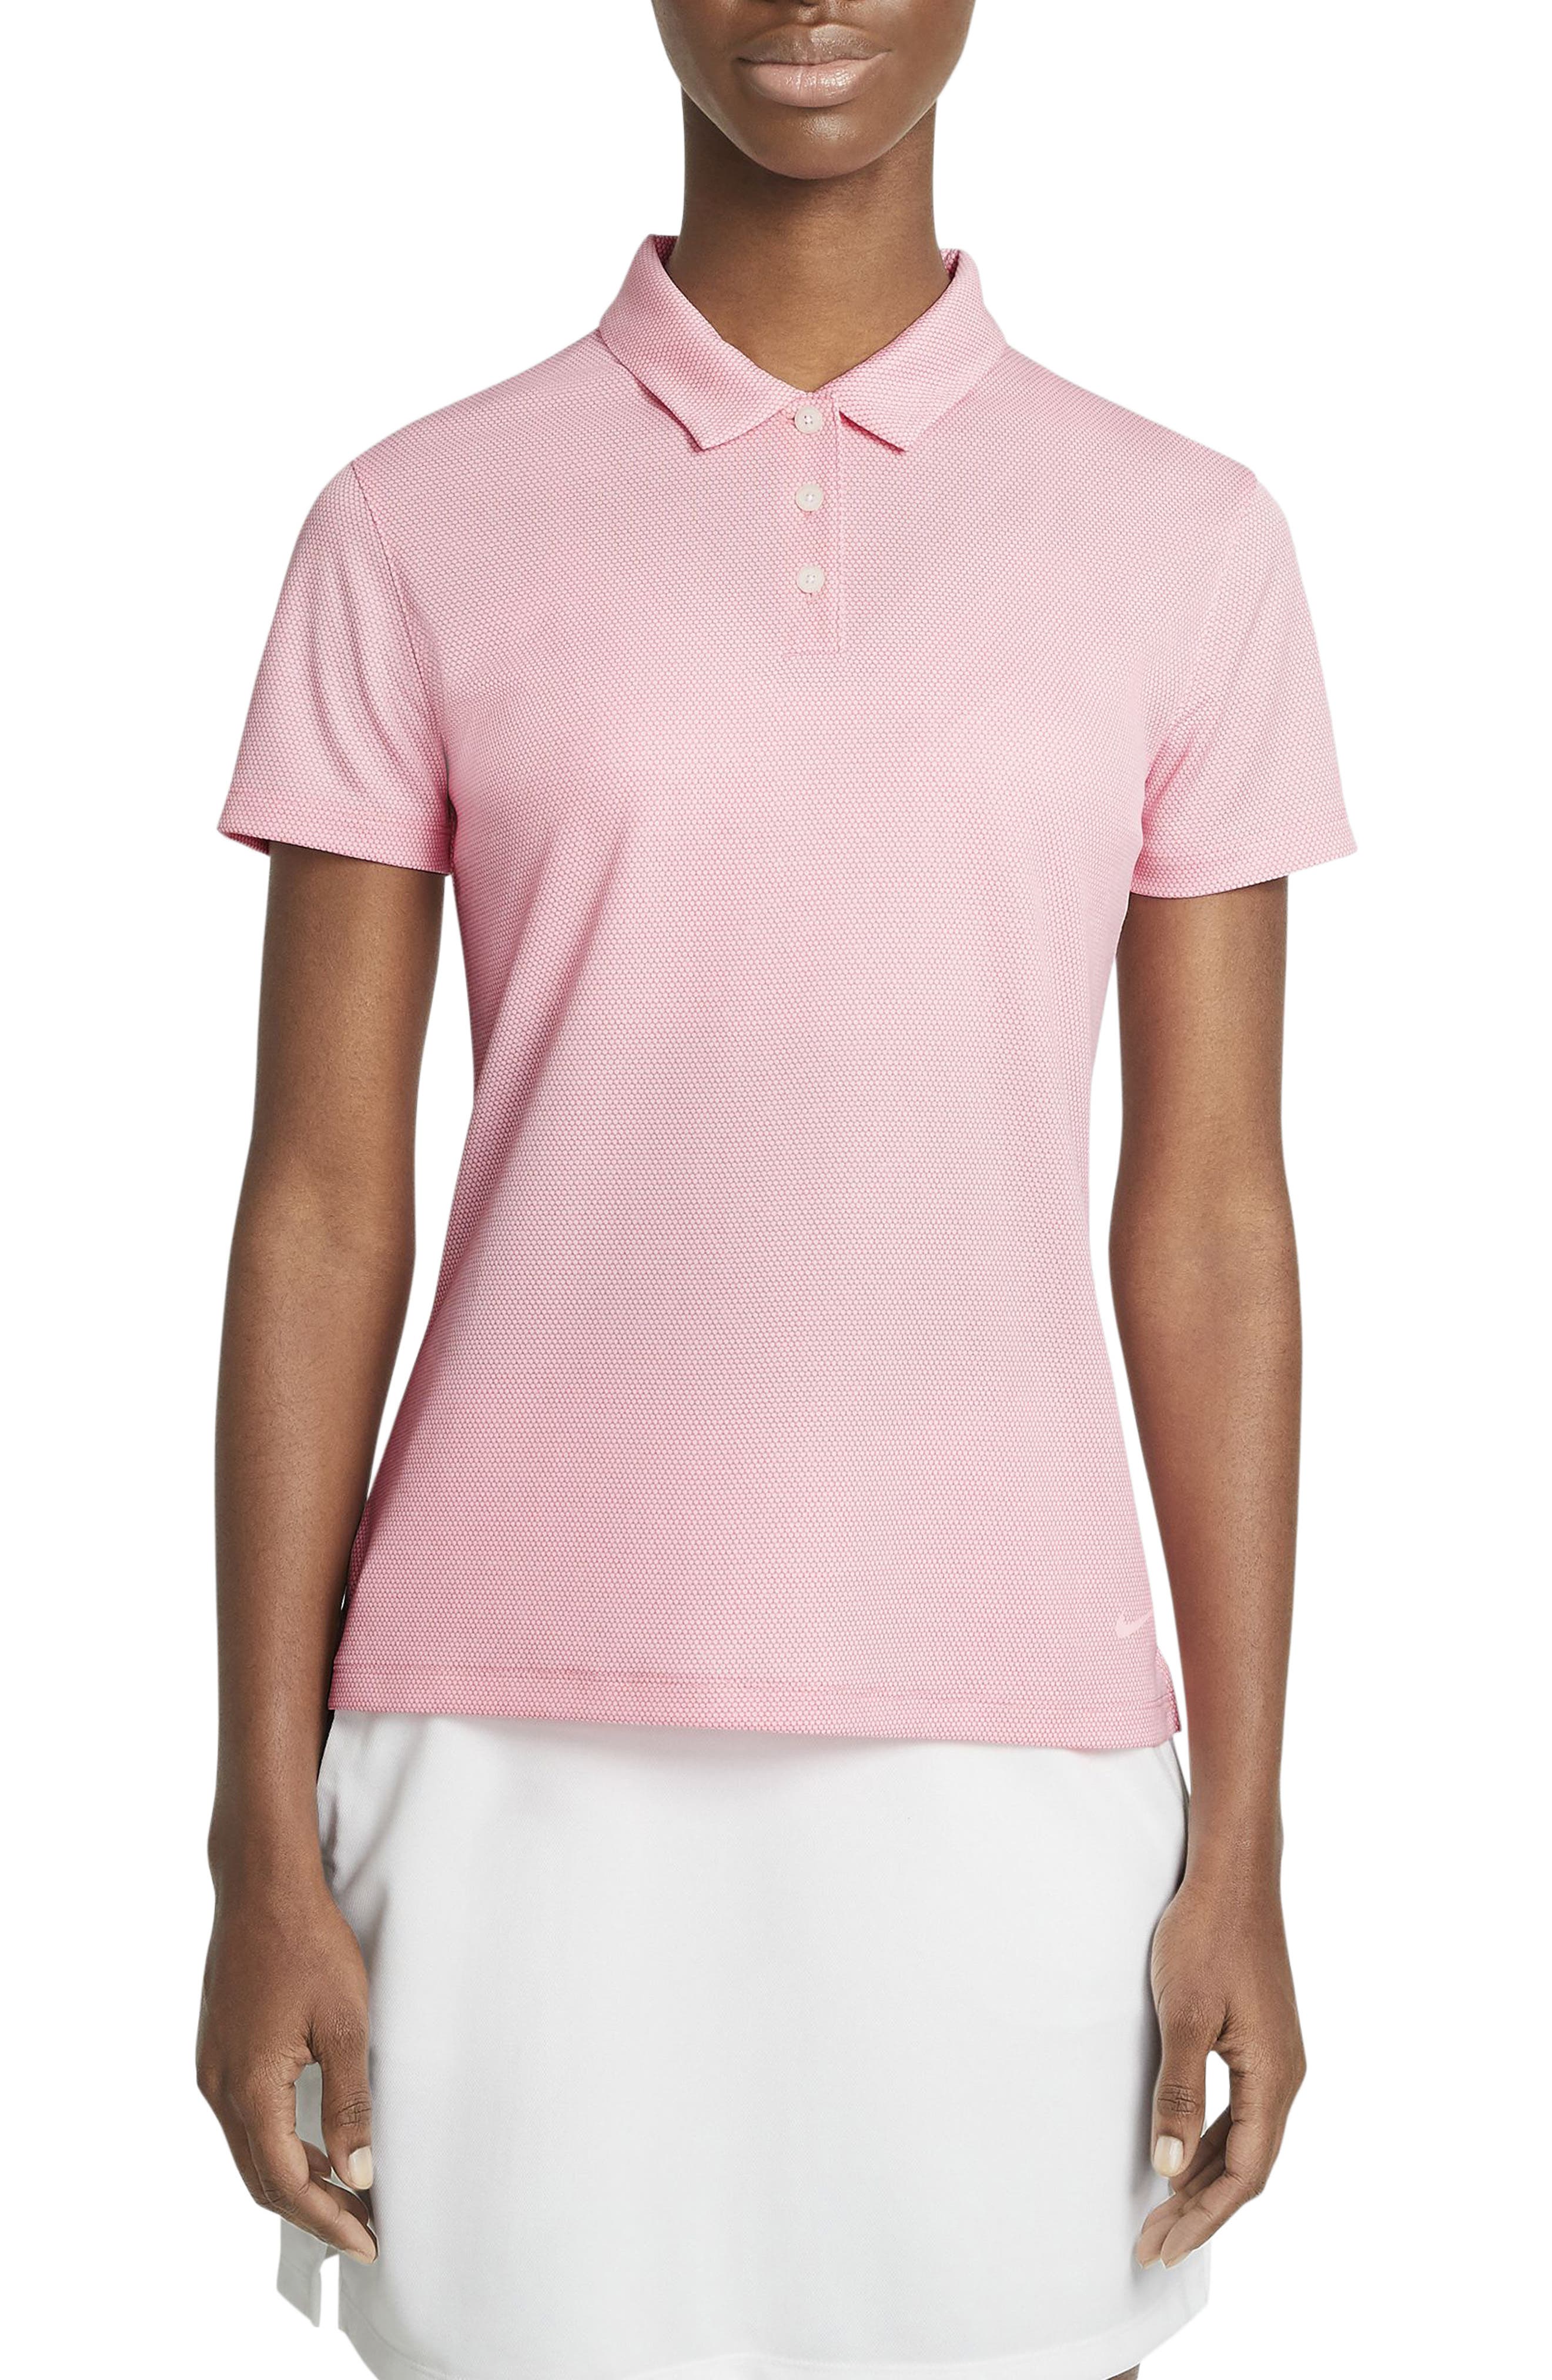 women's nike golf shirt